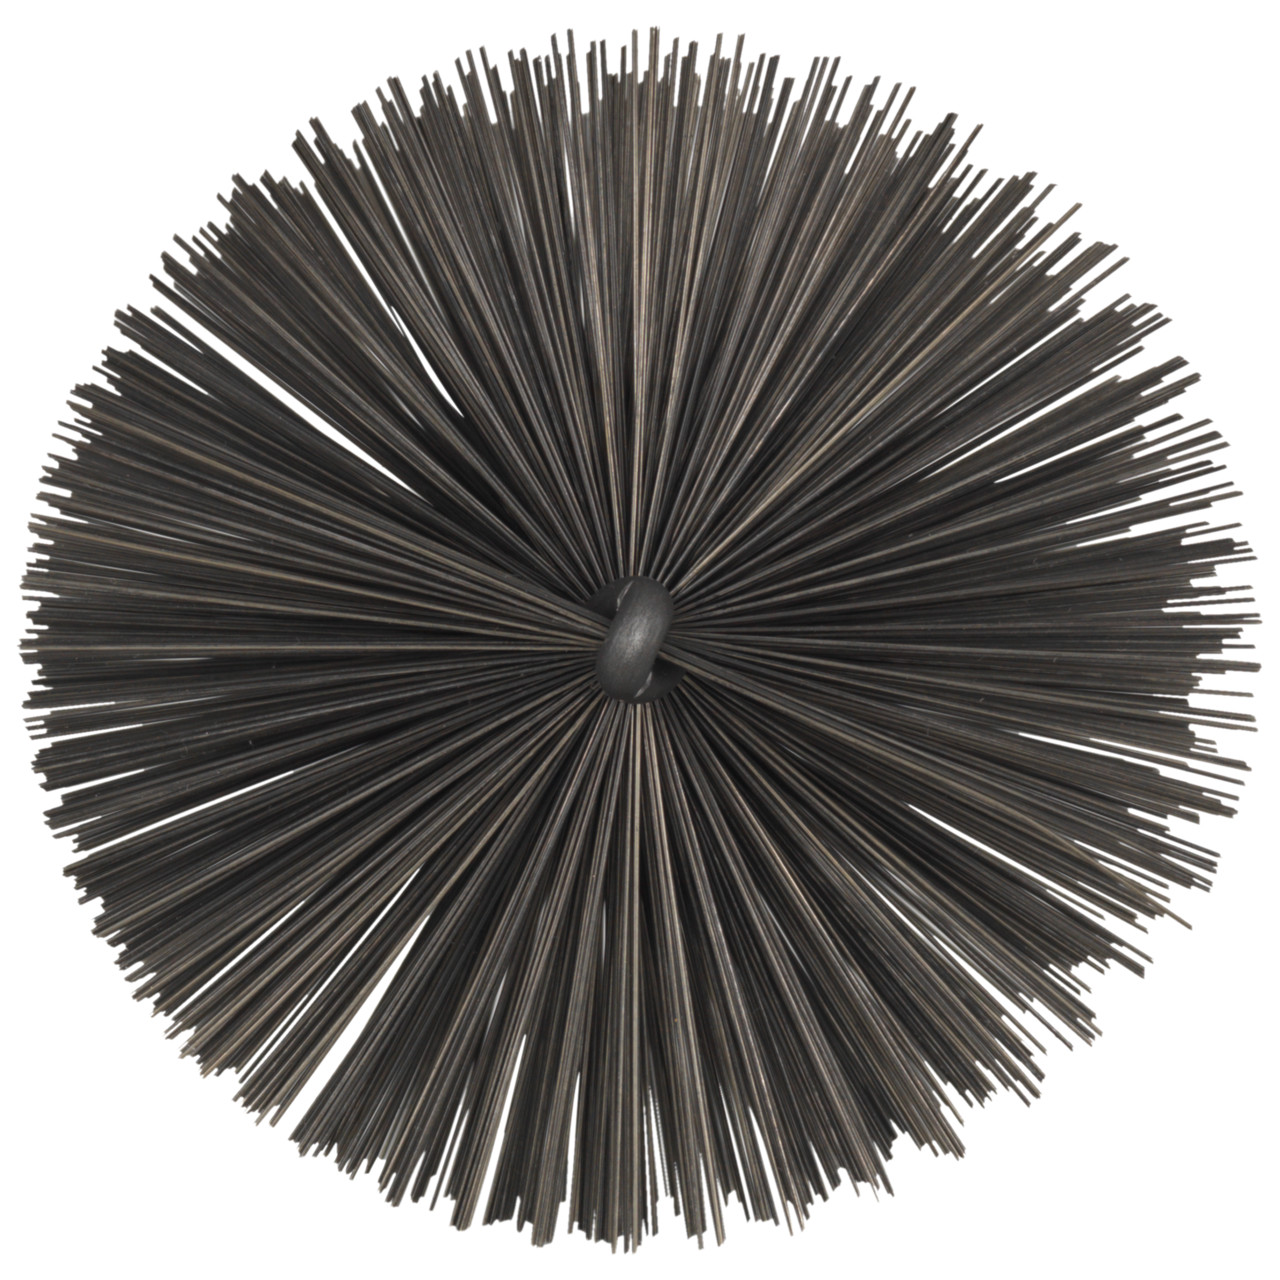 Tyrolit Brosse tubulaire avec filetage extérieur DxGE-I 20xW1/2-150 Pour l'acier, forme : 18ROGDG - (brosse tubulaire), art. 34203600